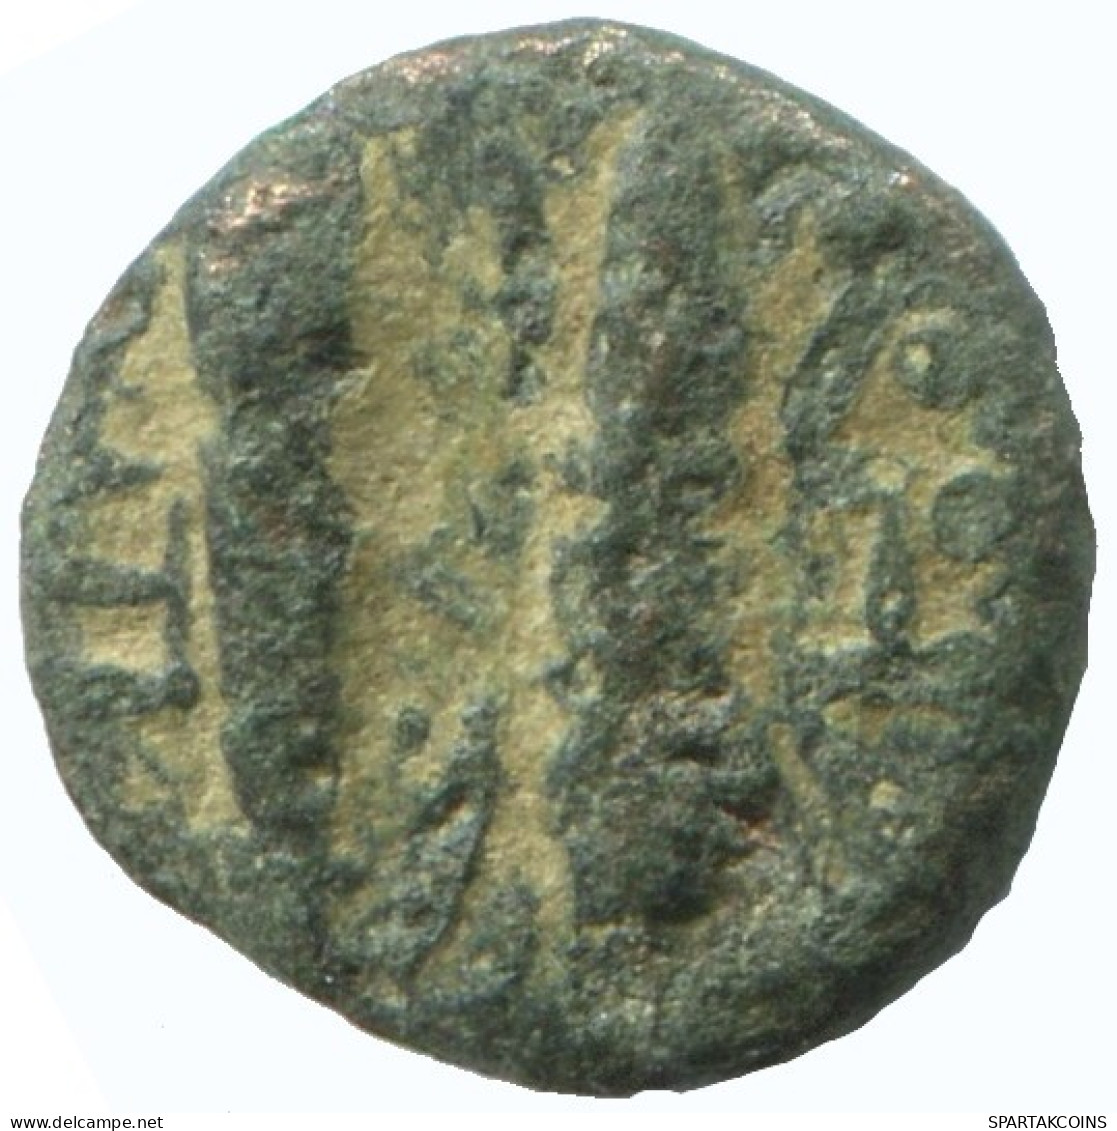 Authentic Original Ancient GREEK Coin 1.4g/12mm #NNN1503.9.U.A - Greche